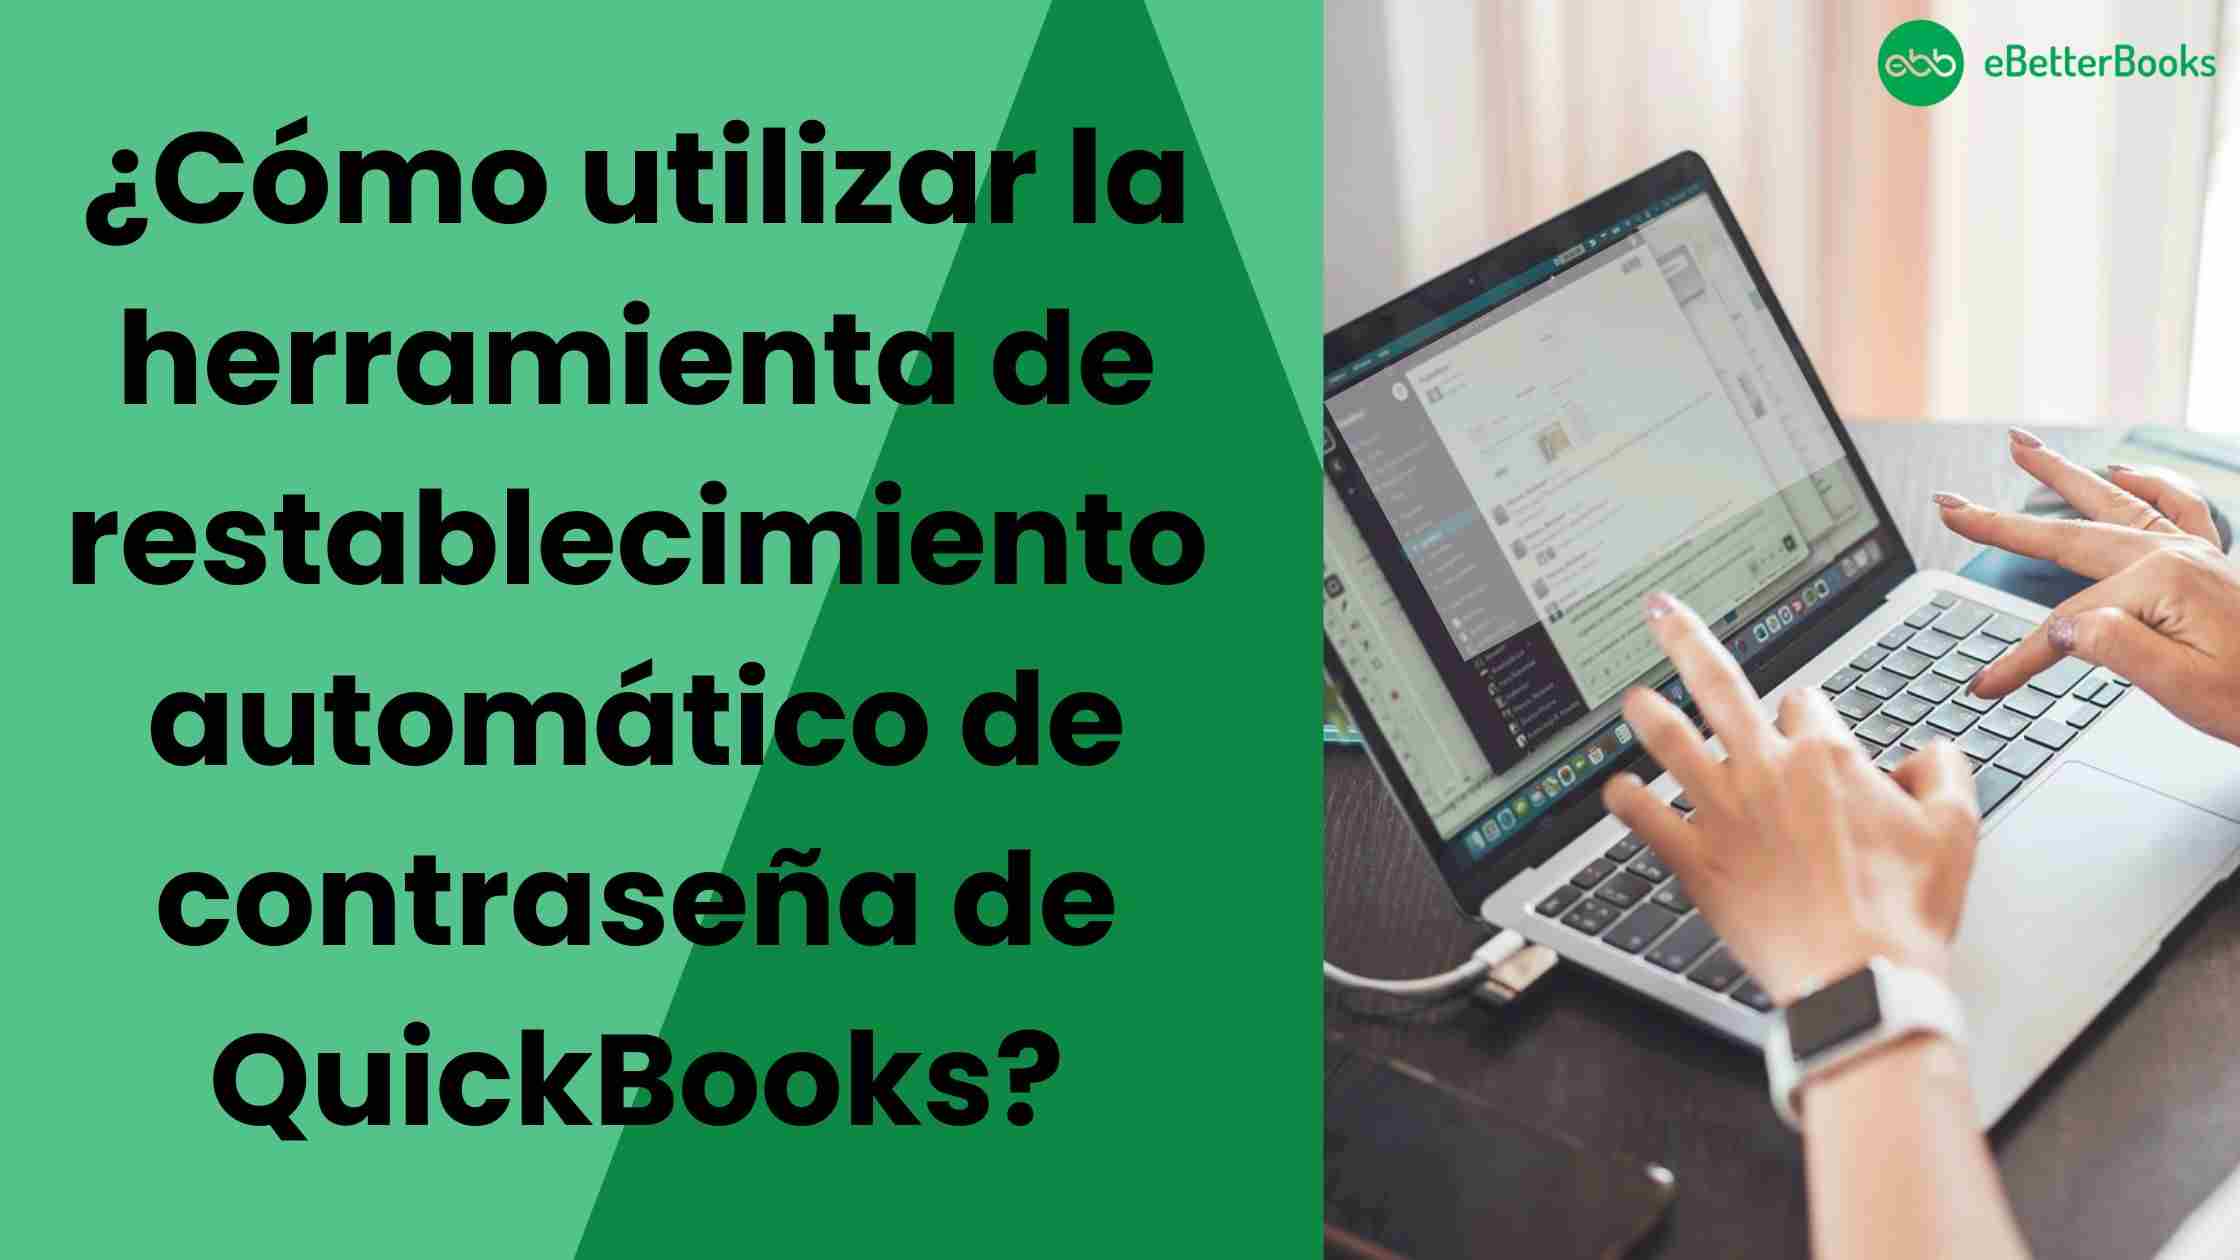 ¿Cómo utilizar la herramienta de restablecimiento automático de contraseña de QuickBooks?